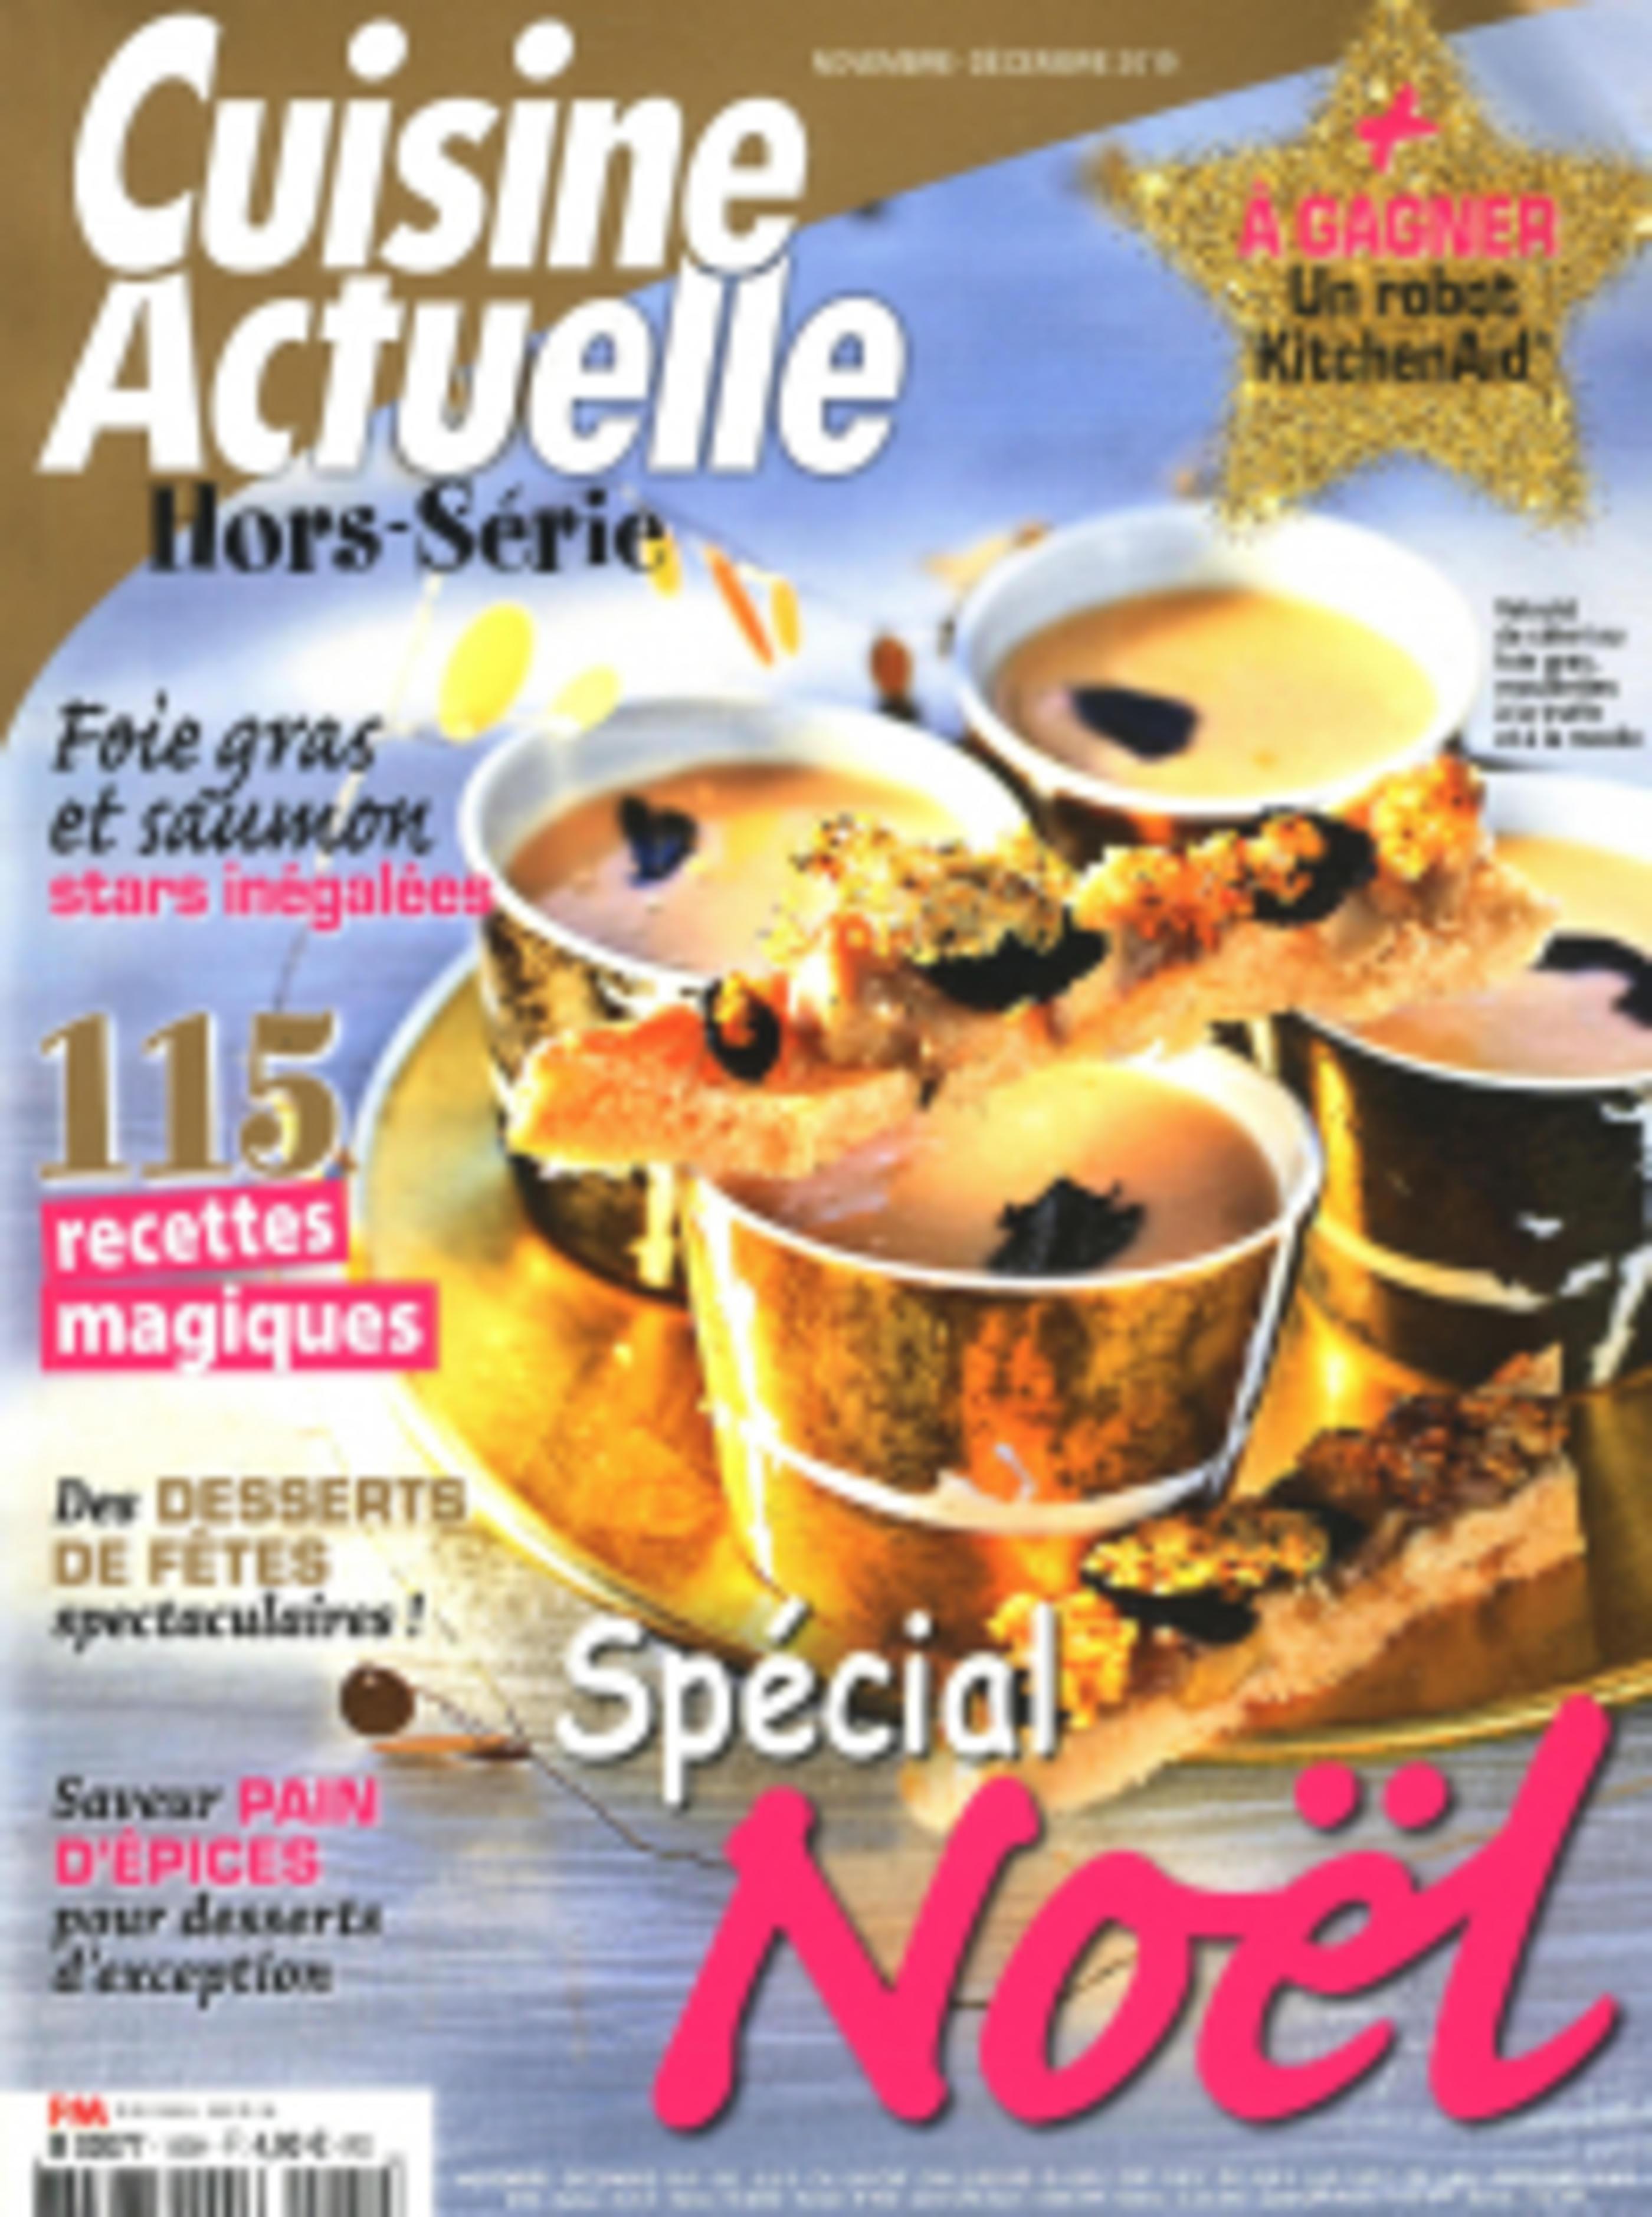 Cuisine_Actuelle_couverture_hors_serie_Noel_2019_Saccoche_cuir_couteaux_de_cuisine_Jean_Dubost_France